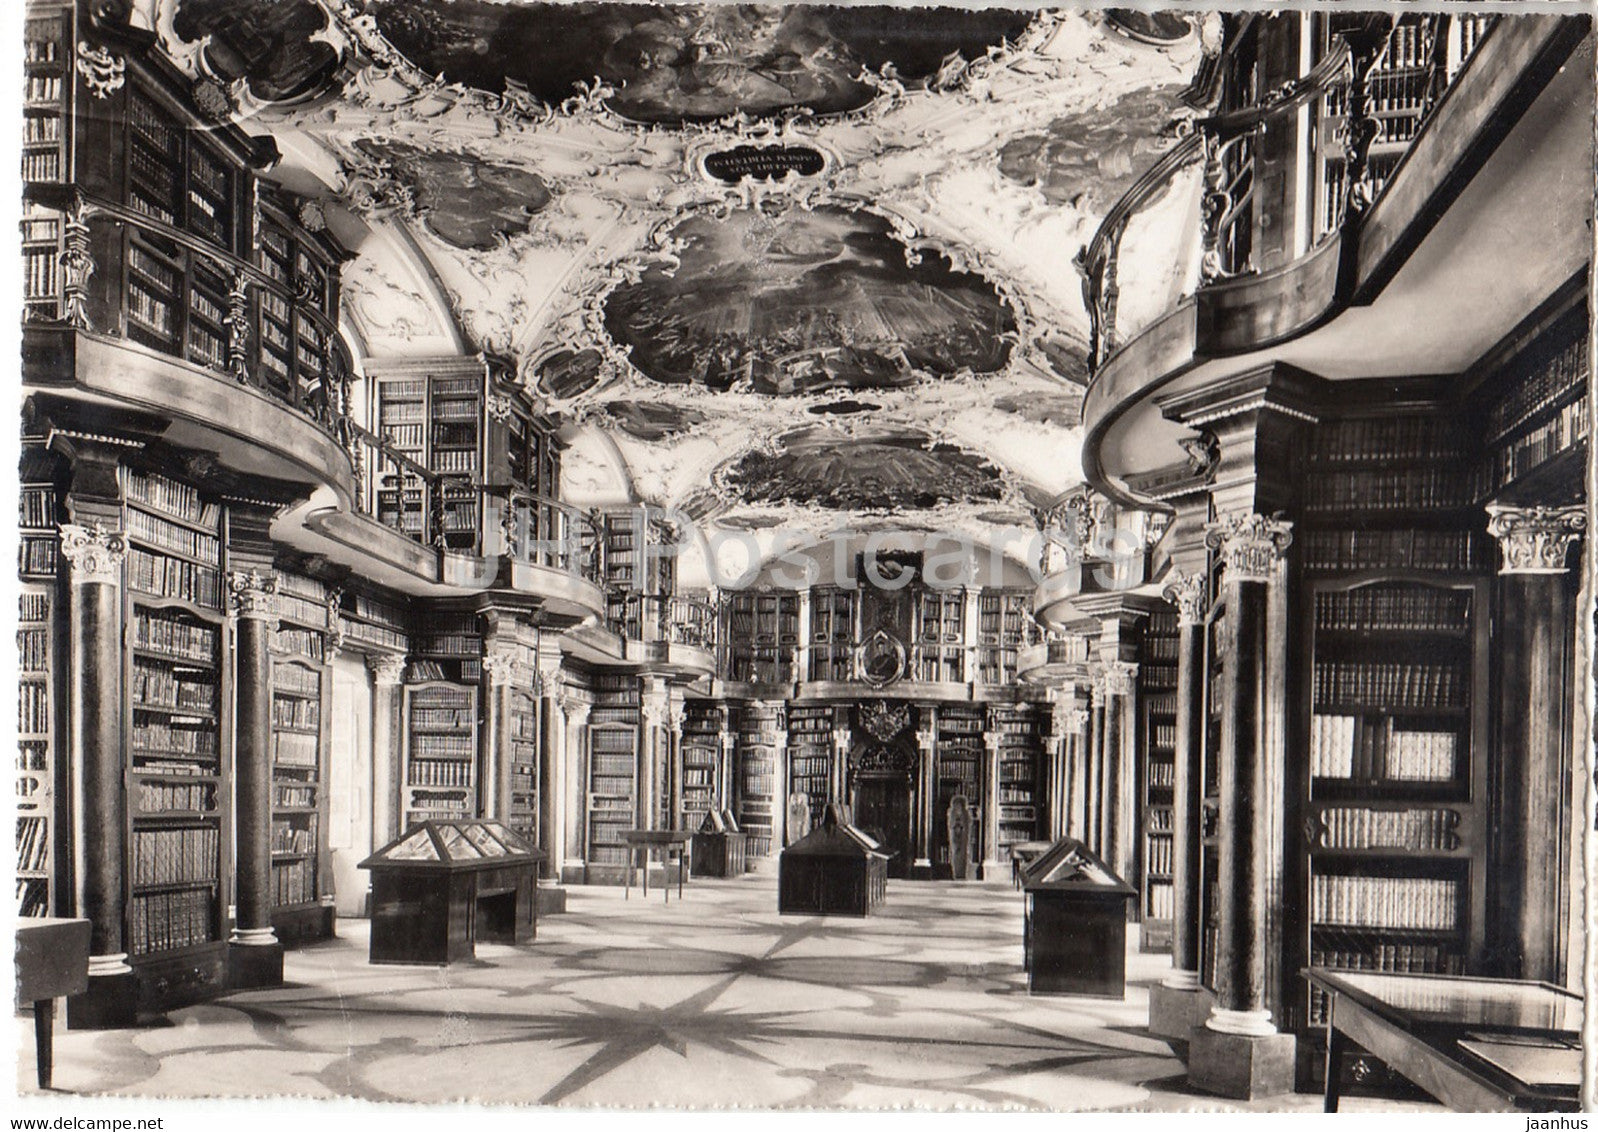 Deckengemalde - Aus der Stiftsbibliothek St Gallen - library - 21 - old postcard - Switzerland - unused - JH Postcards